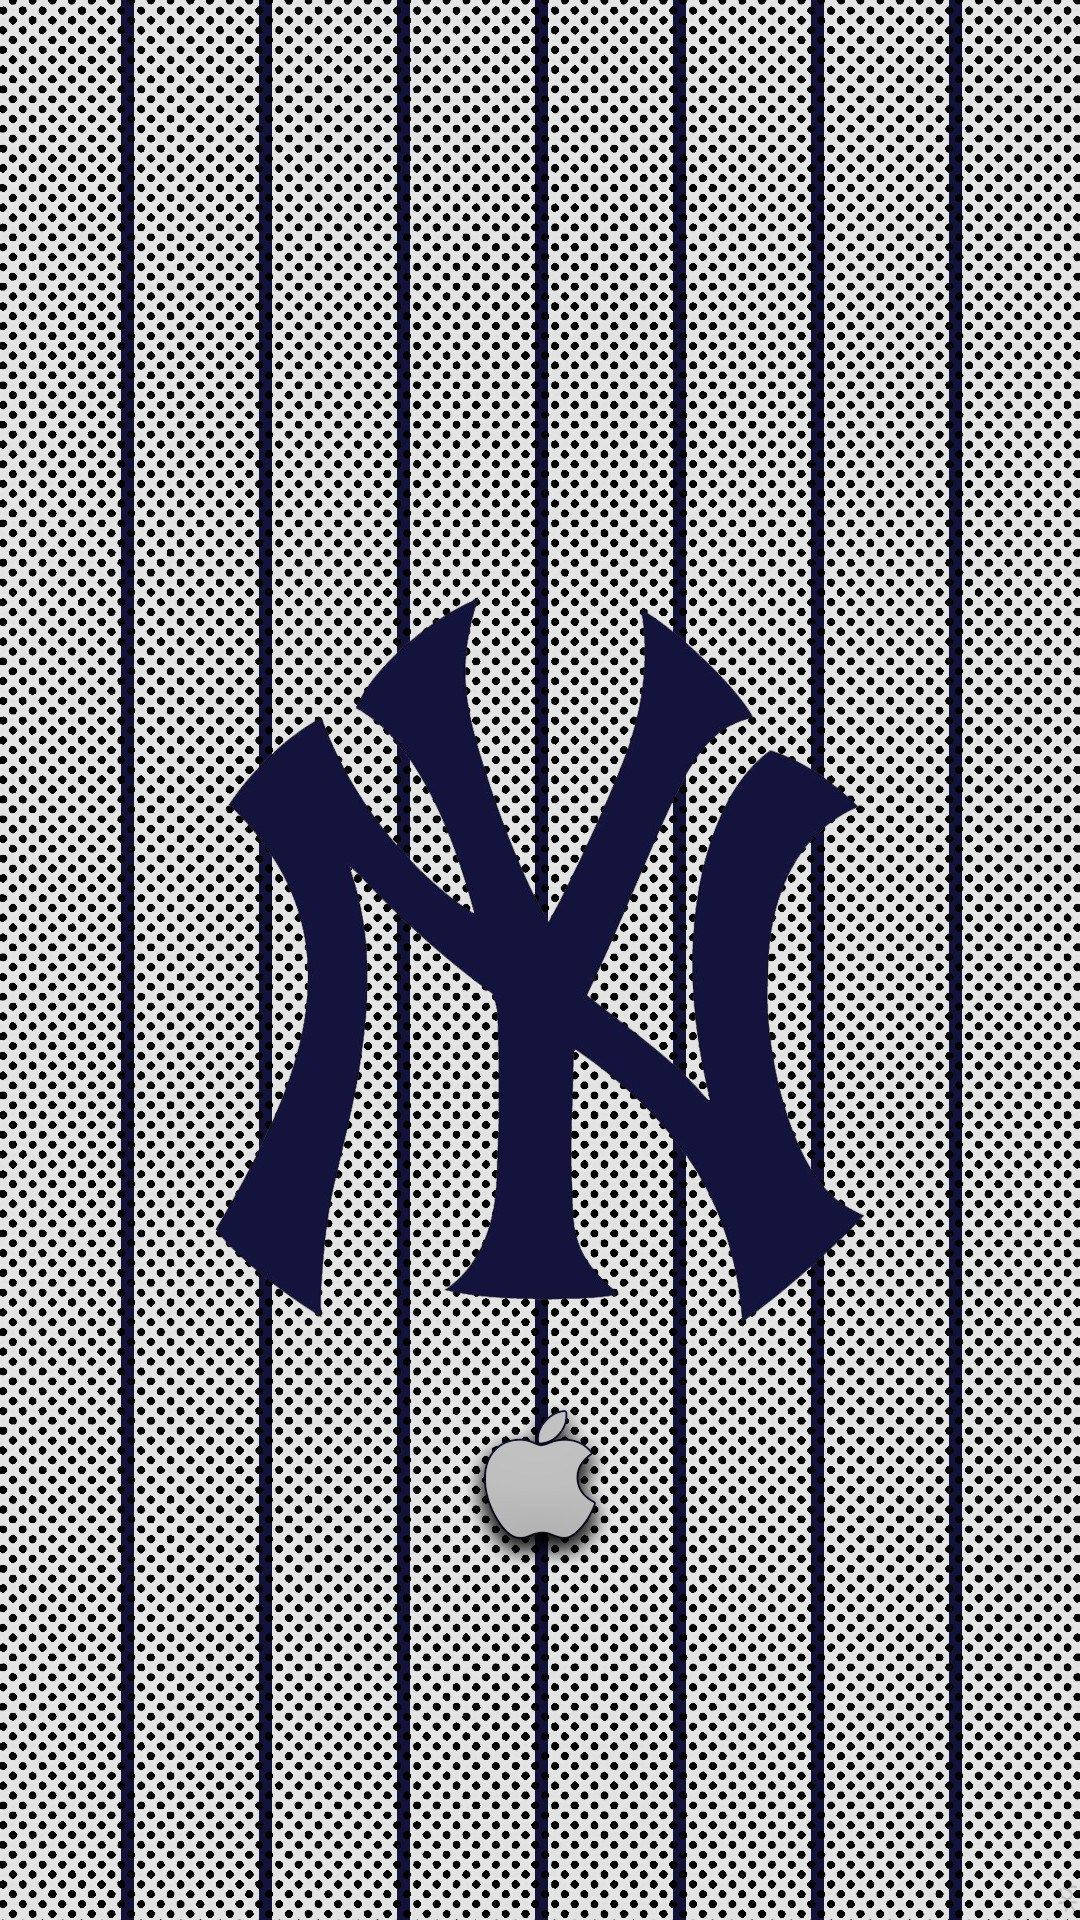 Beautiful New York Yankees Wallpaper Iphone. Art & Design